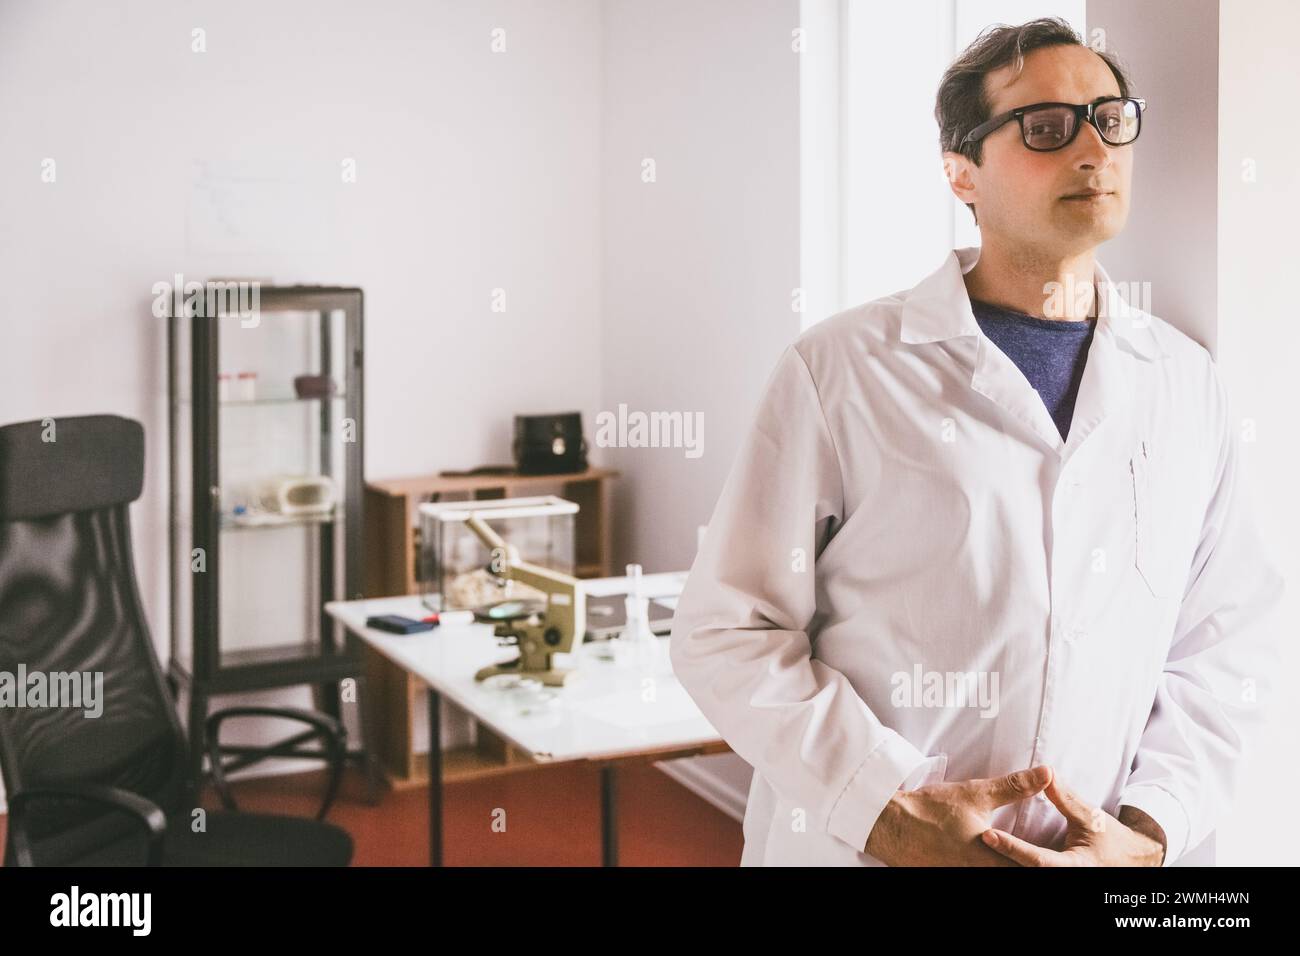 Ein erwachsener kaukasischer Wissenschaftler in Brille und weißem Mantel steht und blickt unermüdlich vor dem Hintergrund des Labors nach vorne. Stockfoto